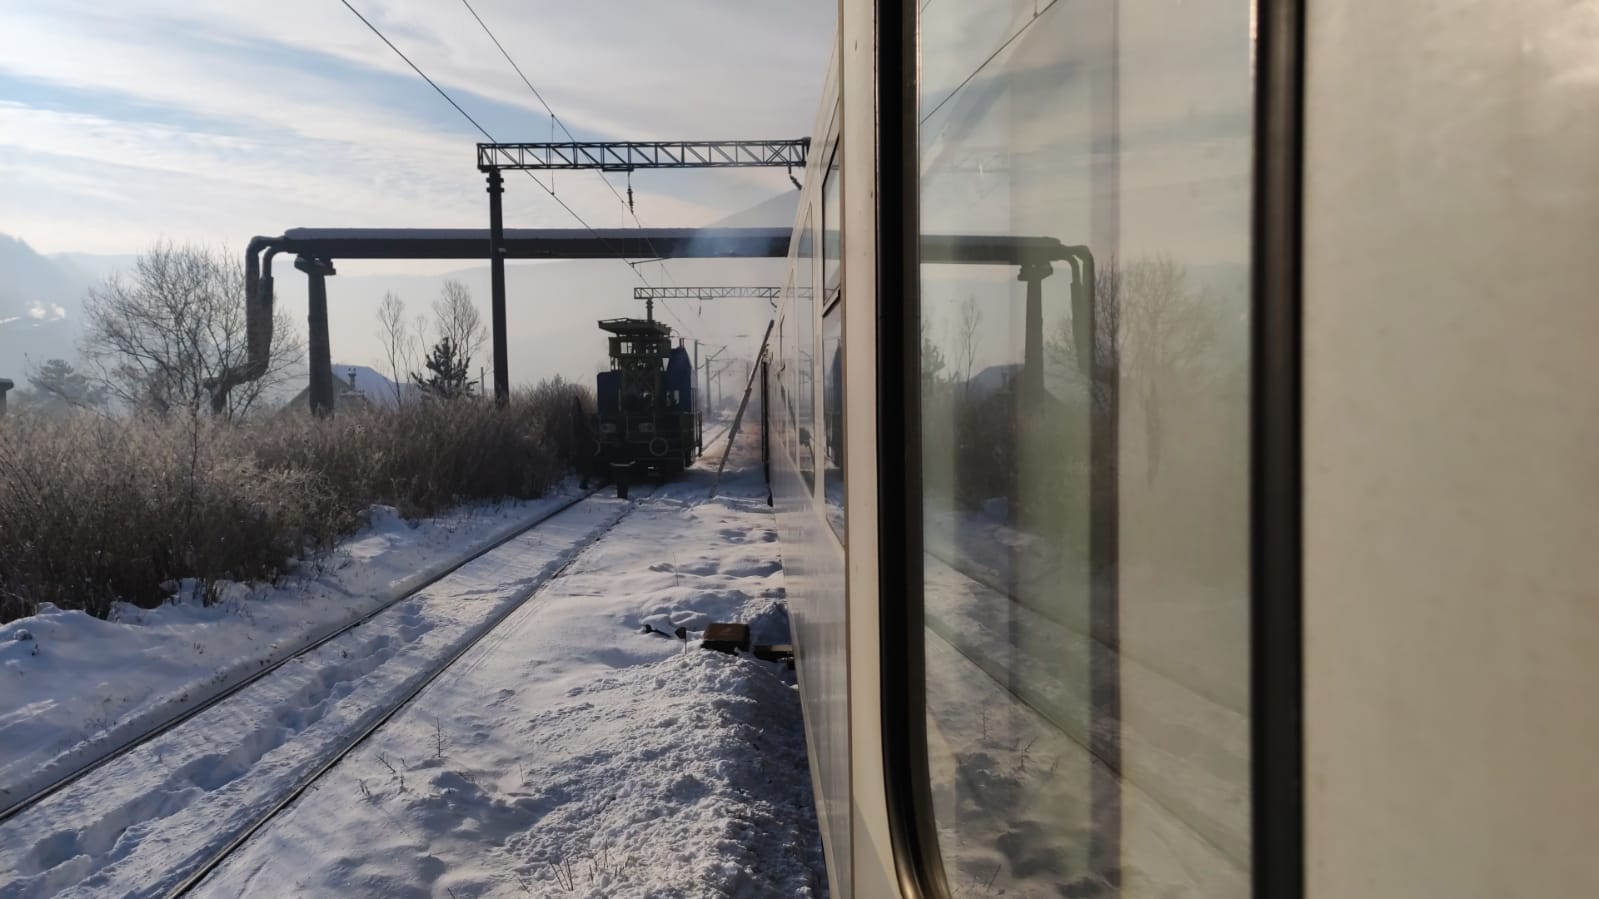 Un tren Deva-București Nord a fost blocat la Petroșani aproape trei ore. Circulația a fost reluată